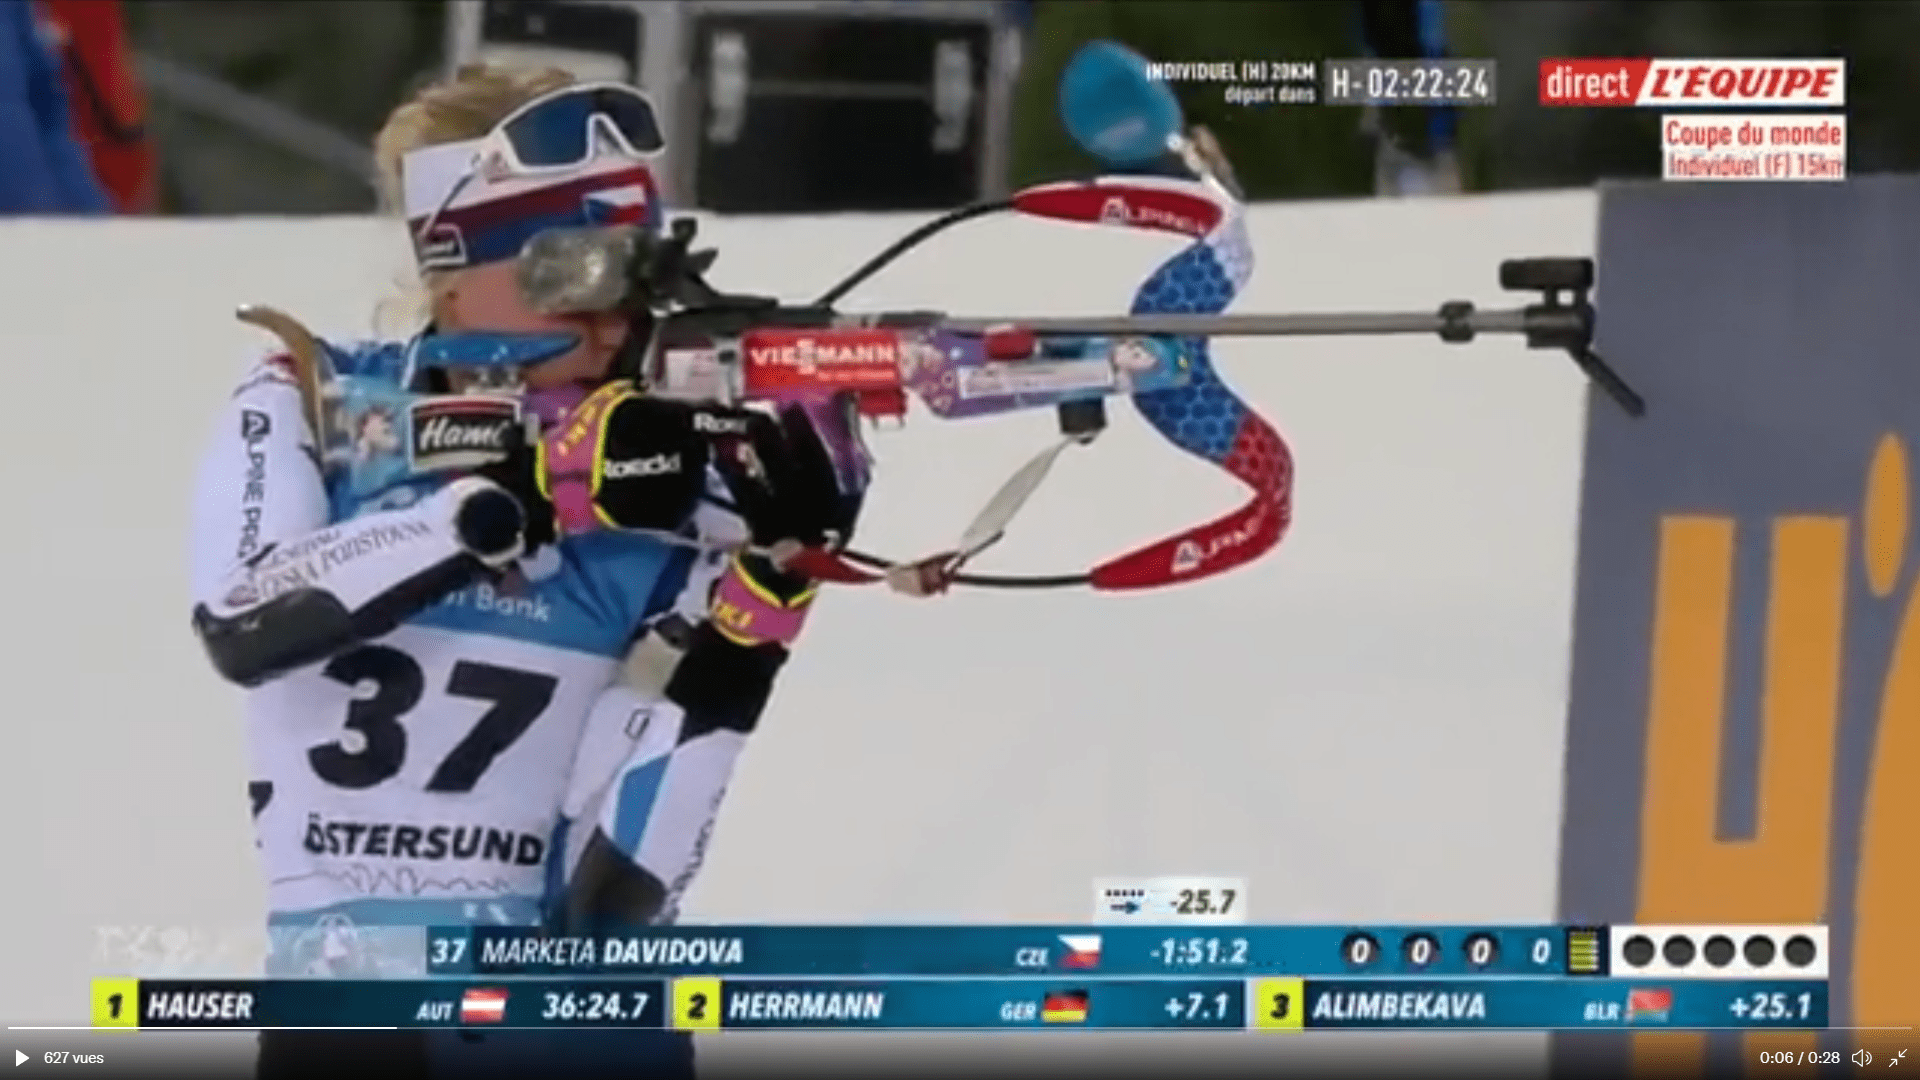 Biathlon Ostersund - Marketa Davidova a été impressionnante et s'impose devant Hauser et Hermann. Les Françaises sont passées à côté.